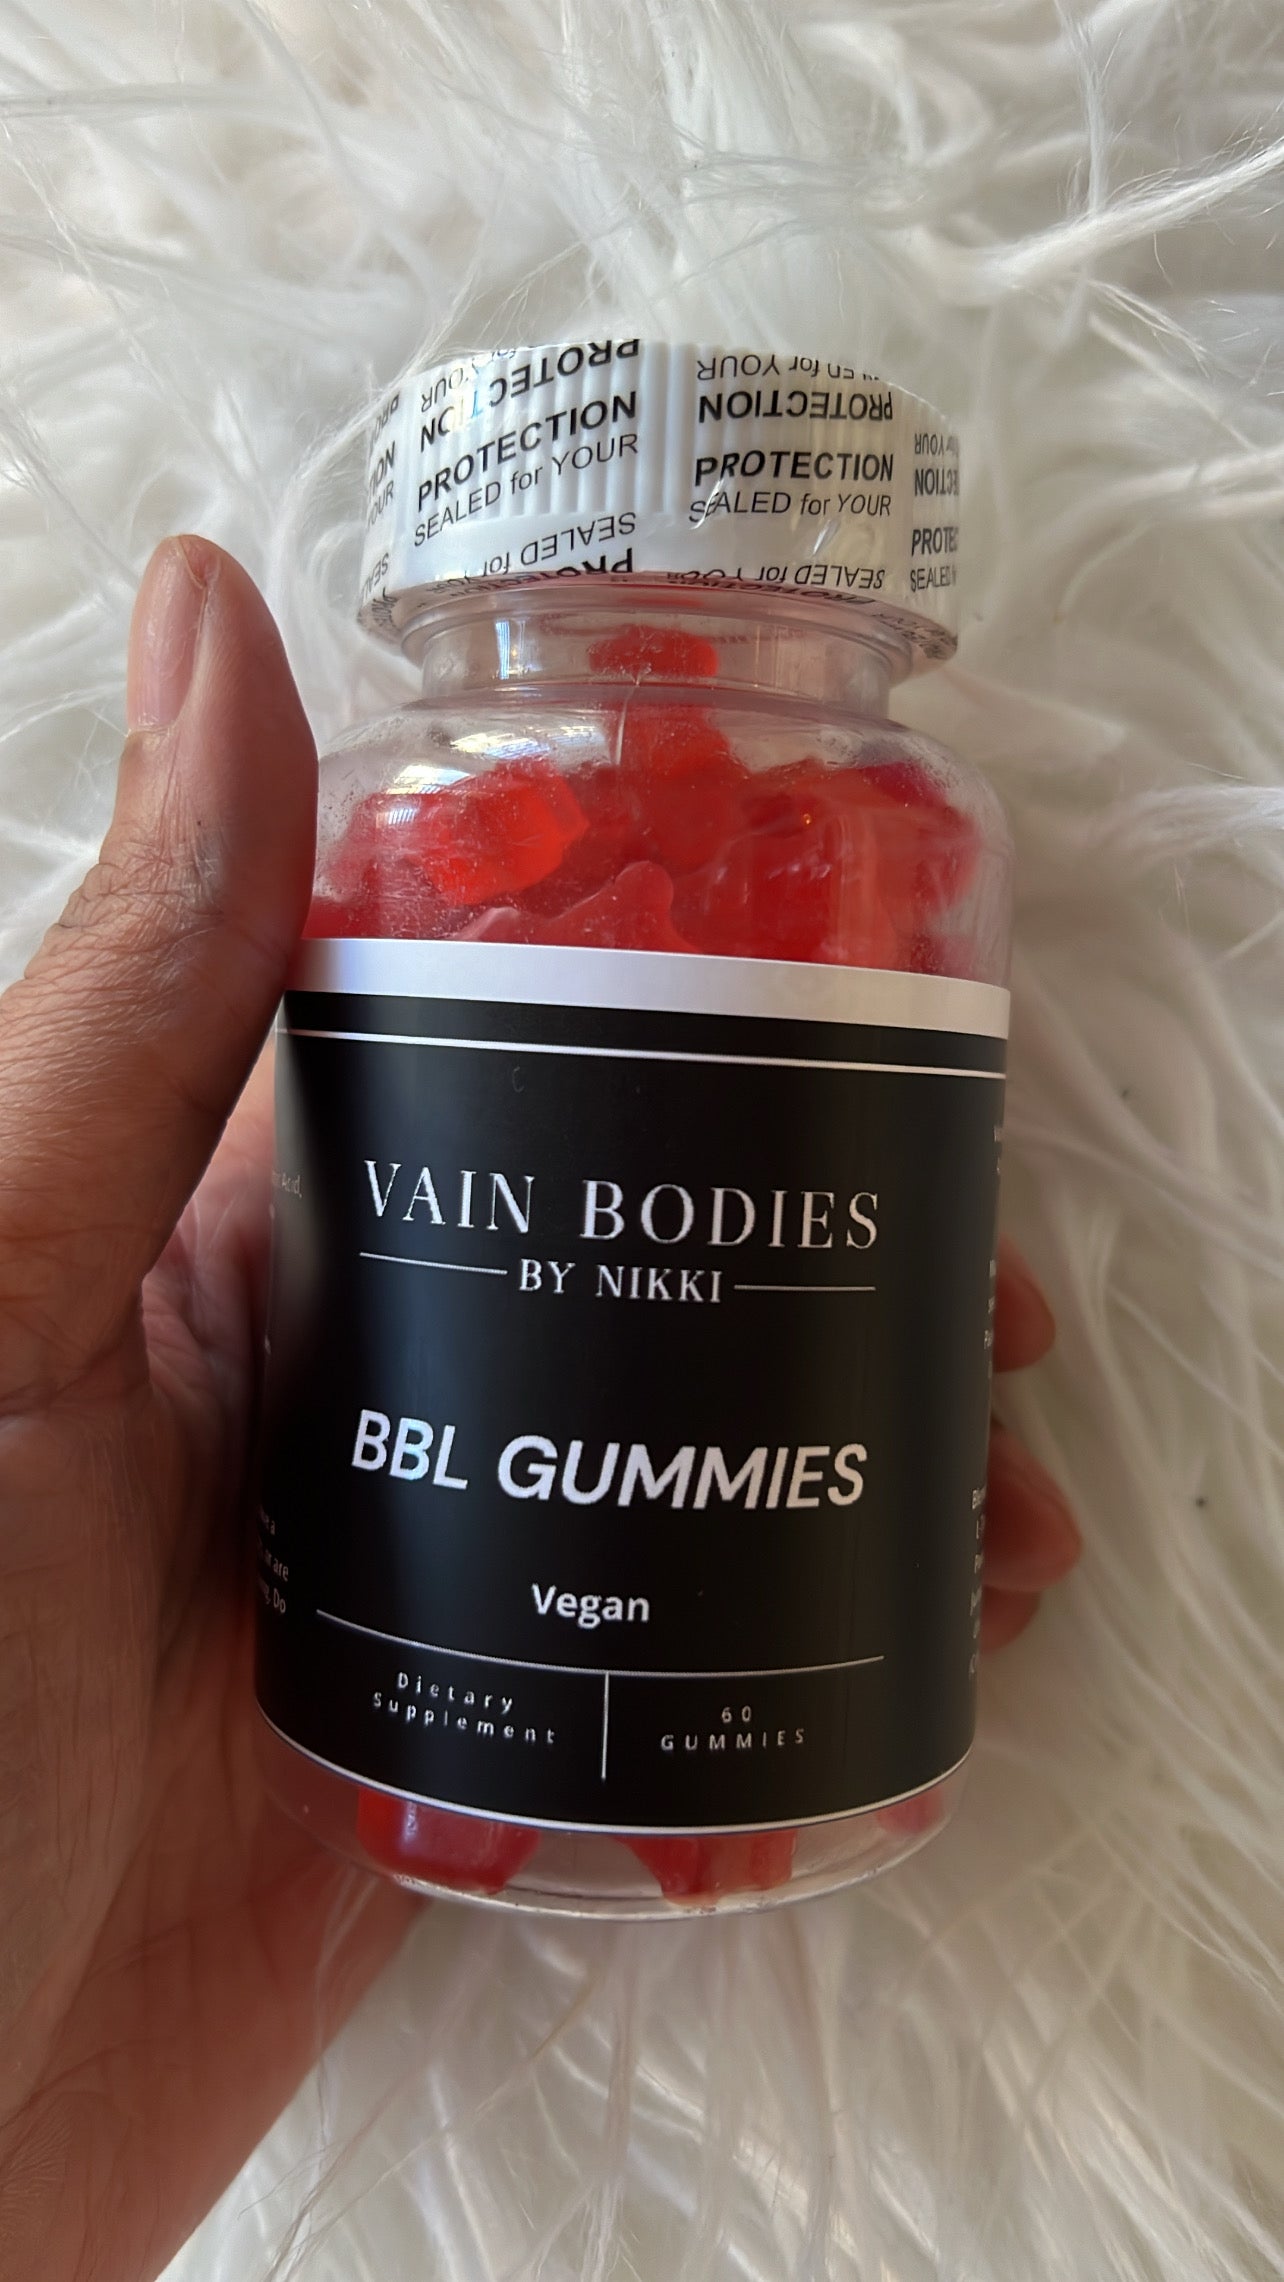 BBL Gummies